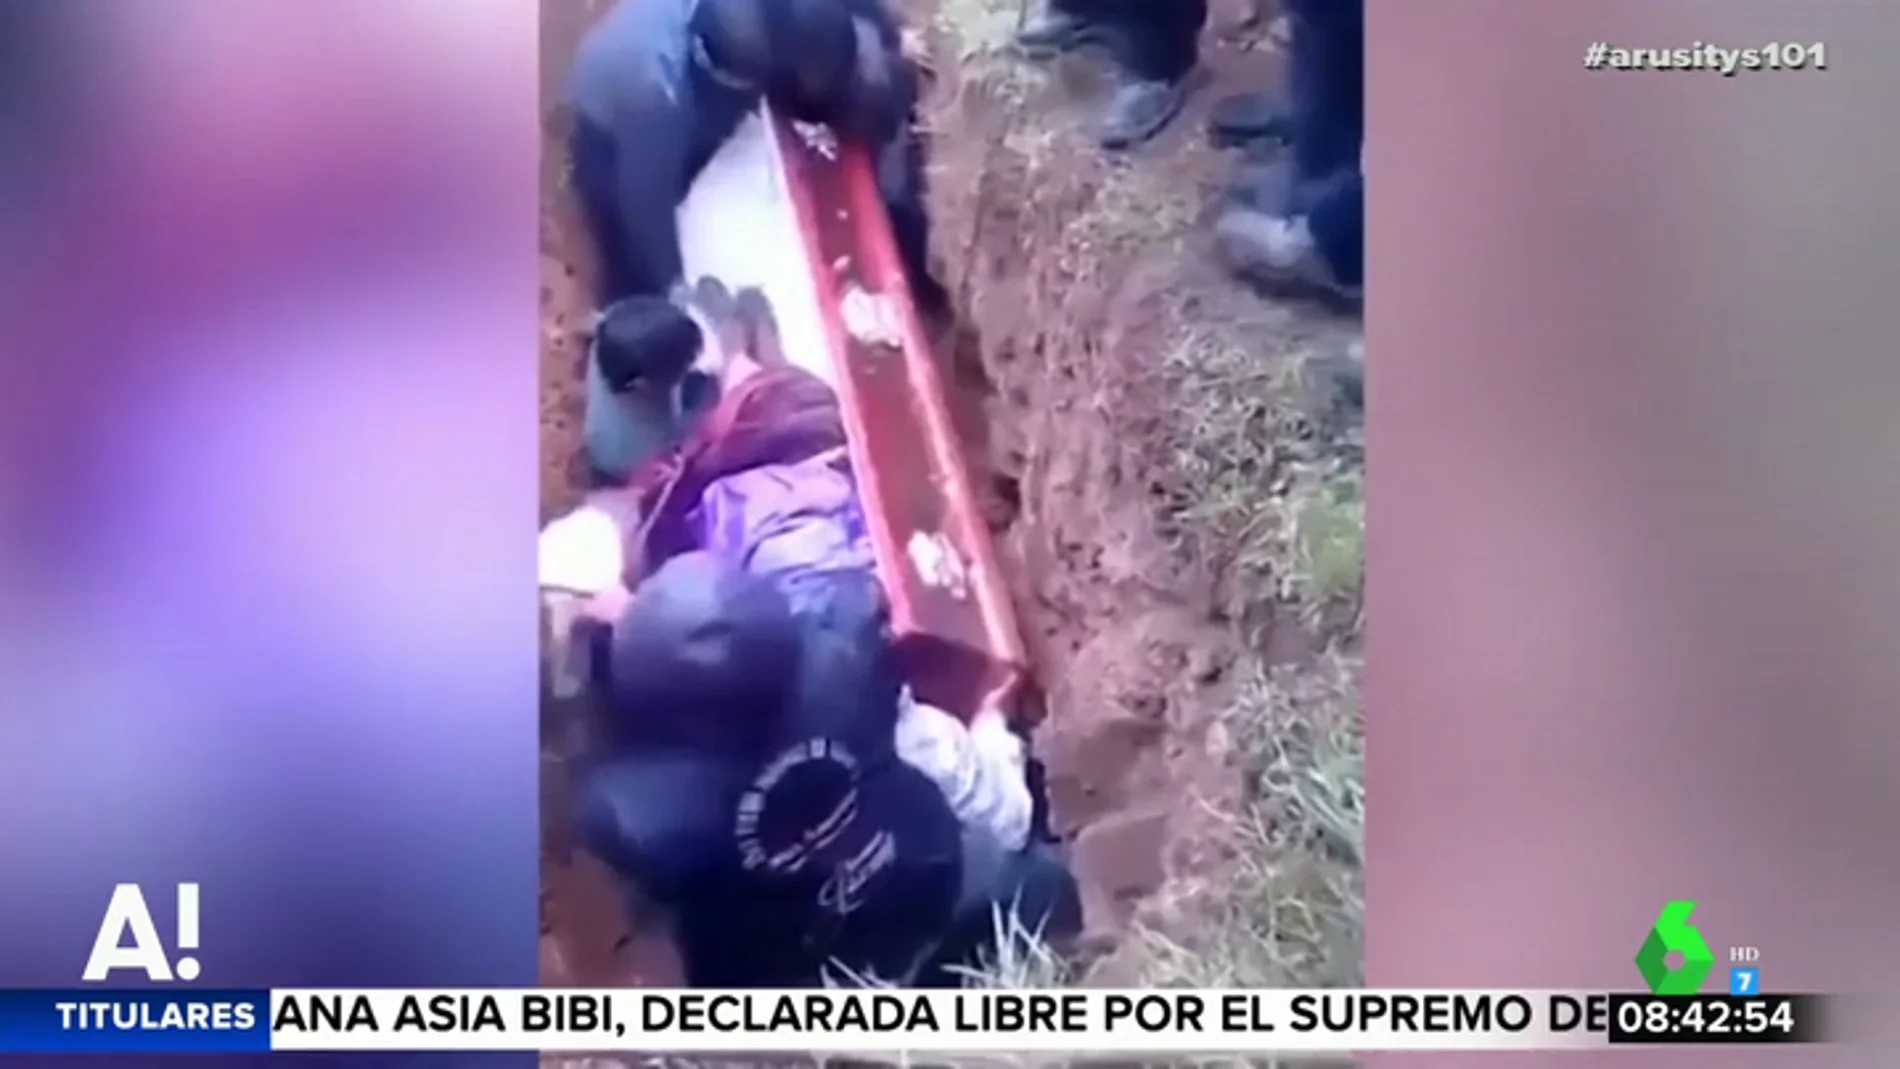 Impactantes imágenes: el cadáver de una mujer se sale del ataúd durante el entierro después de que un hombre cayera sobre él